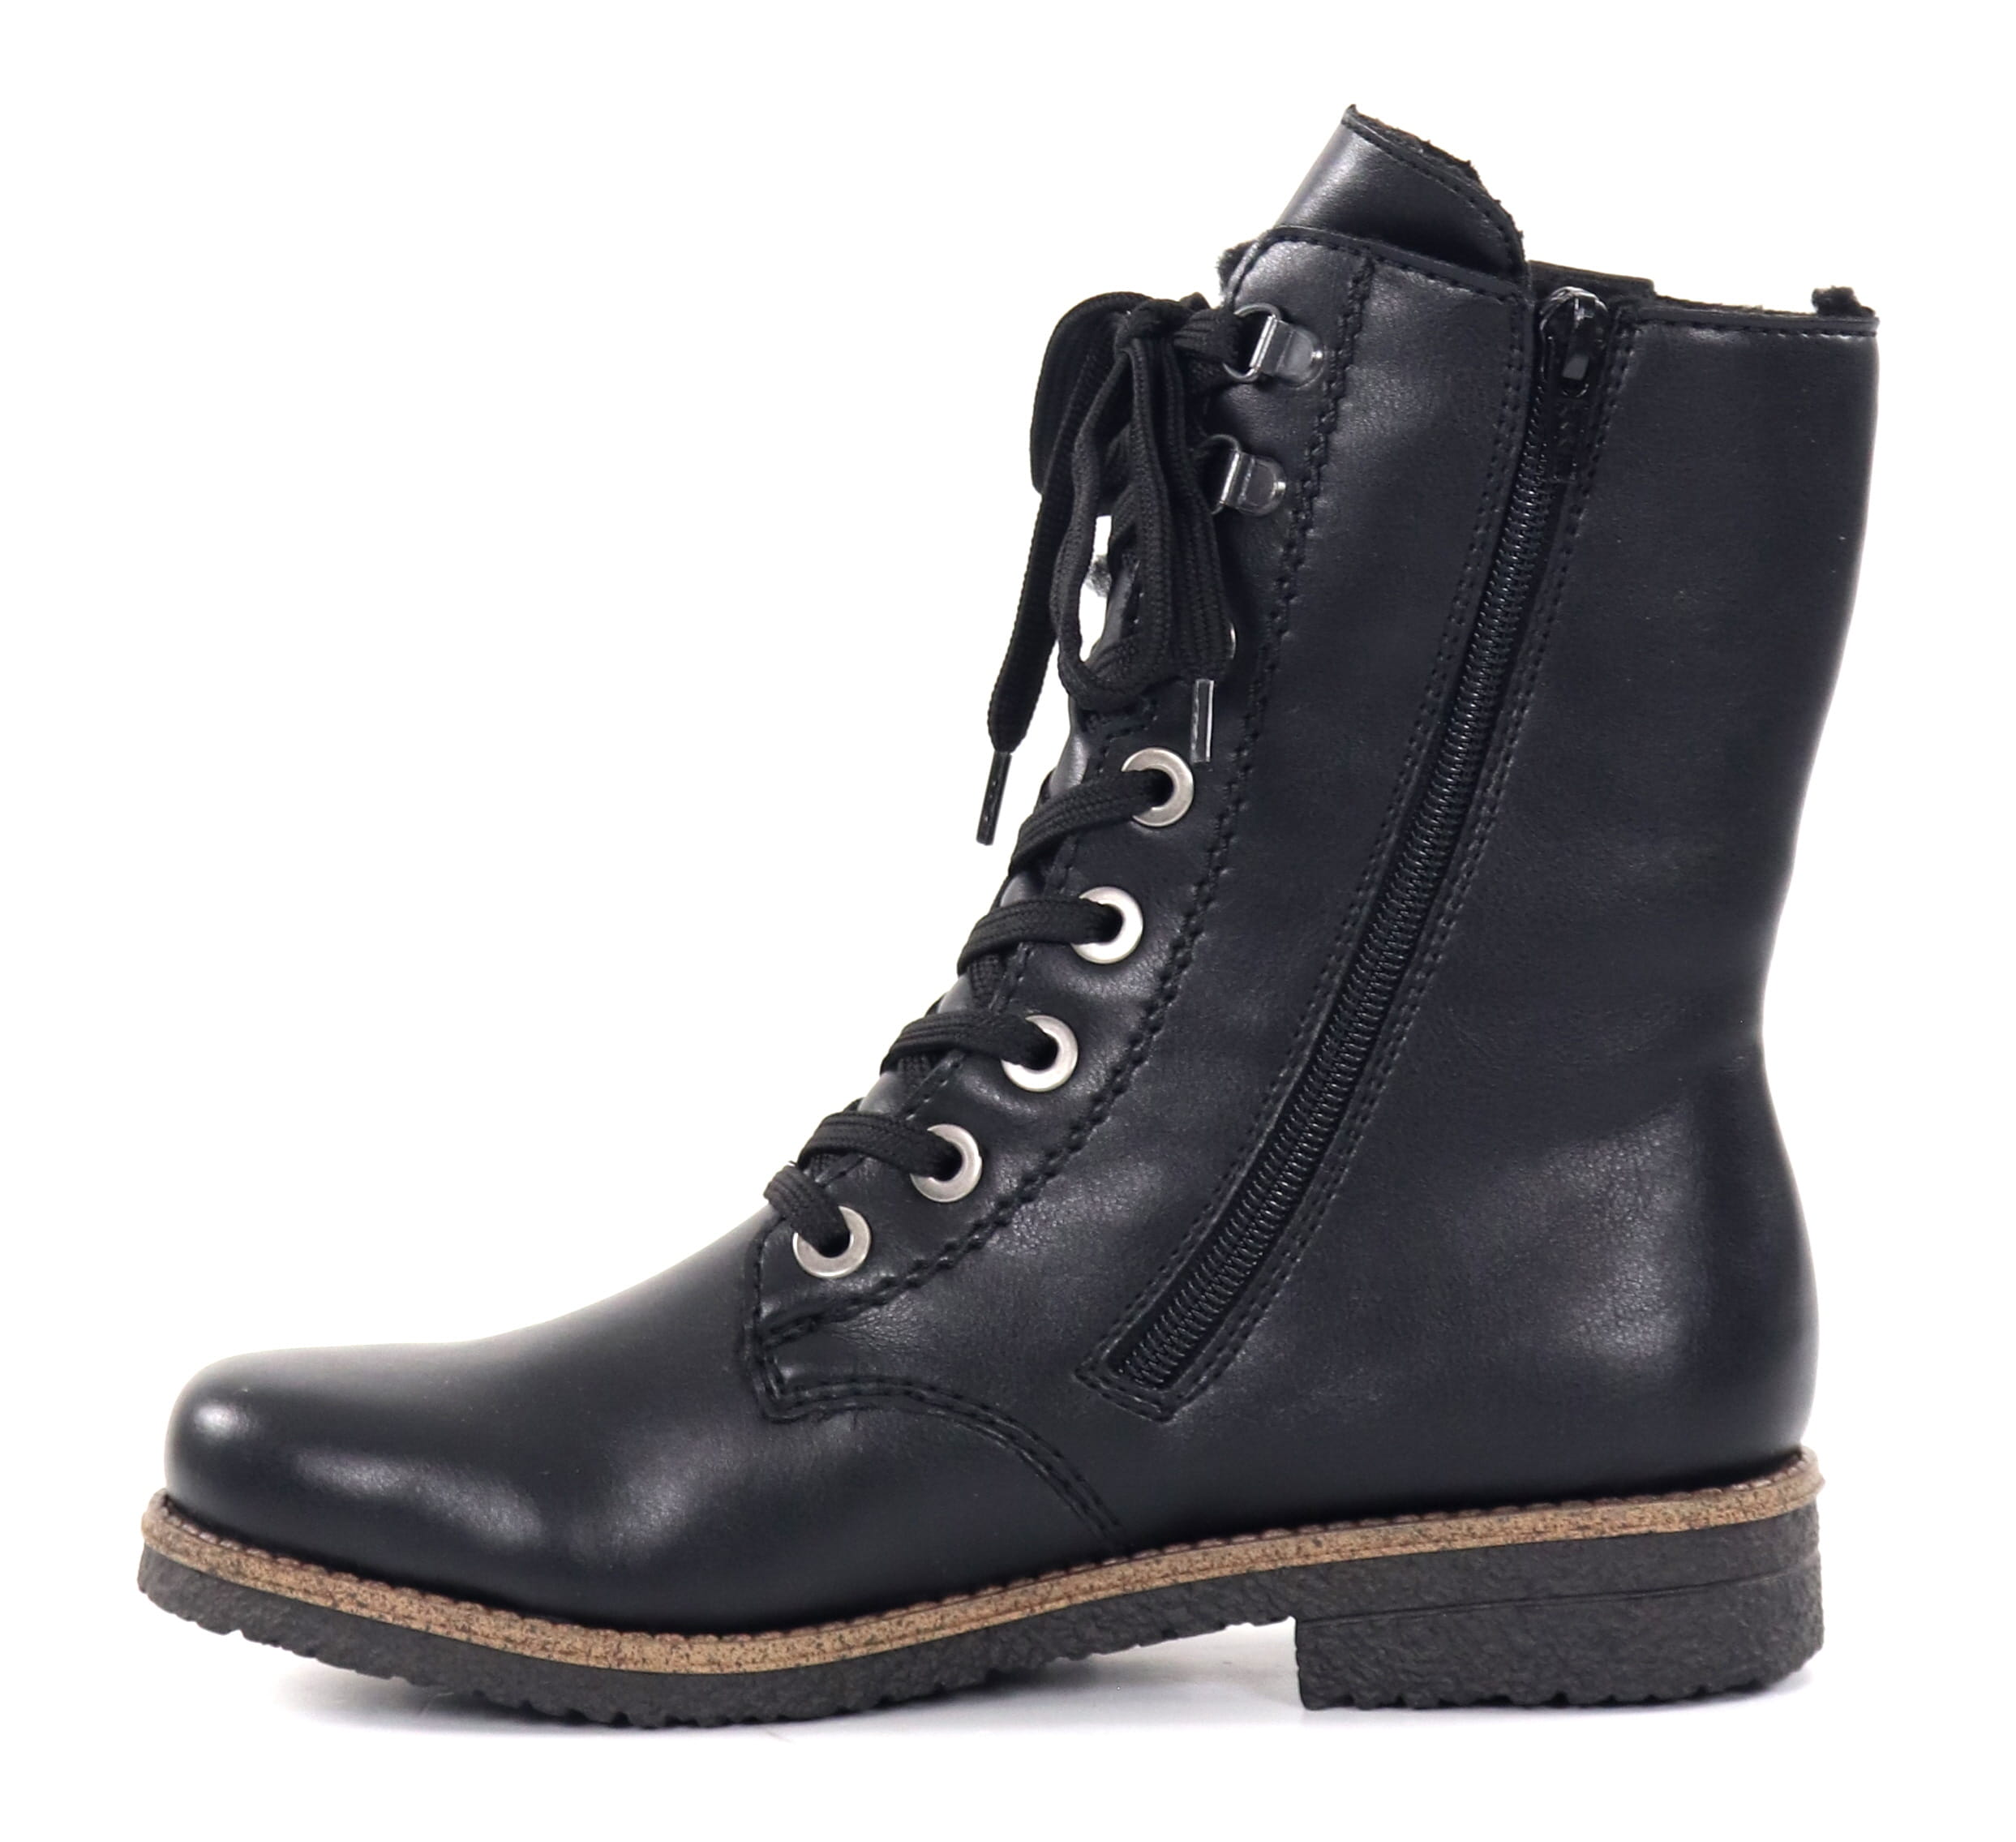 Rieker women's ankle boots 73542-00 black - Stilettoshop.eu webstore